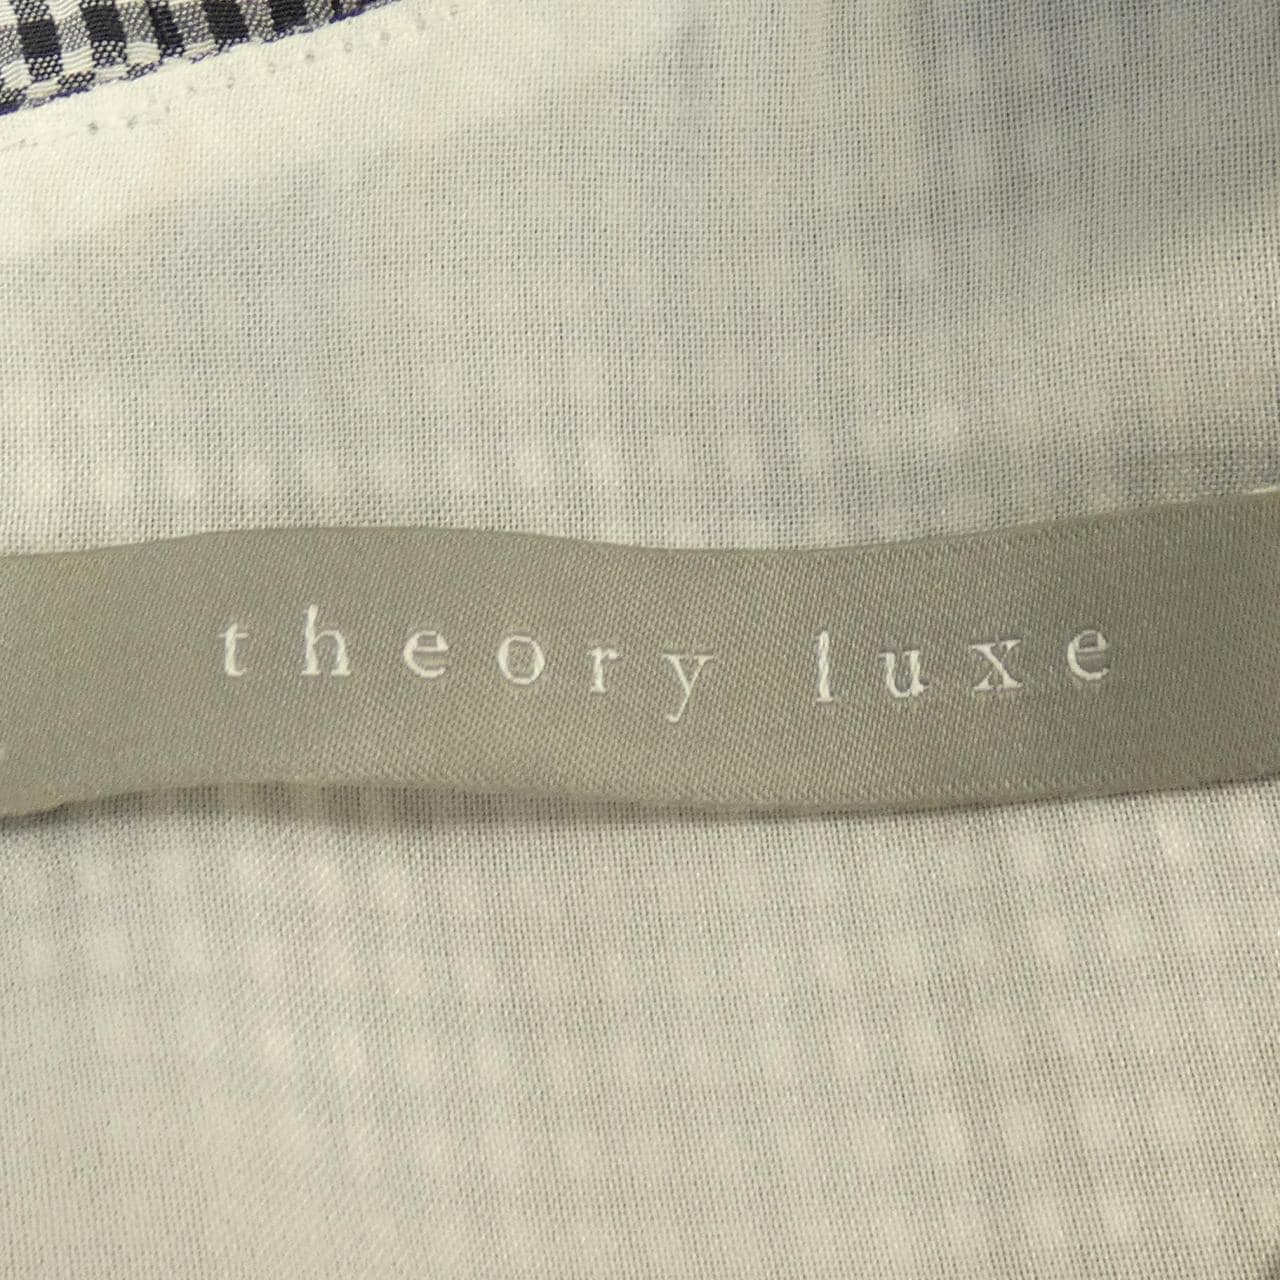 塞奥利露Theory luxe连衣裙